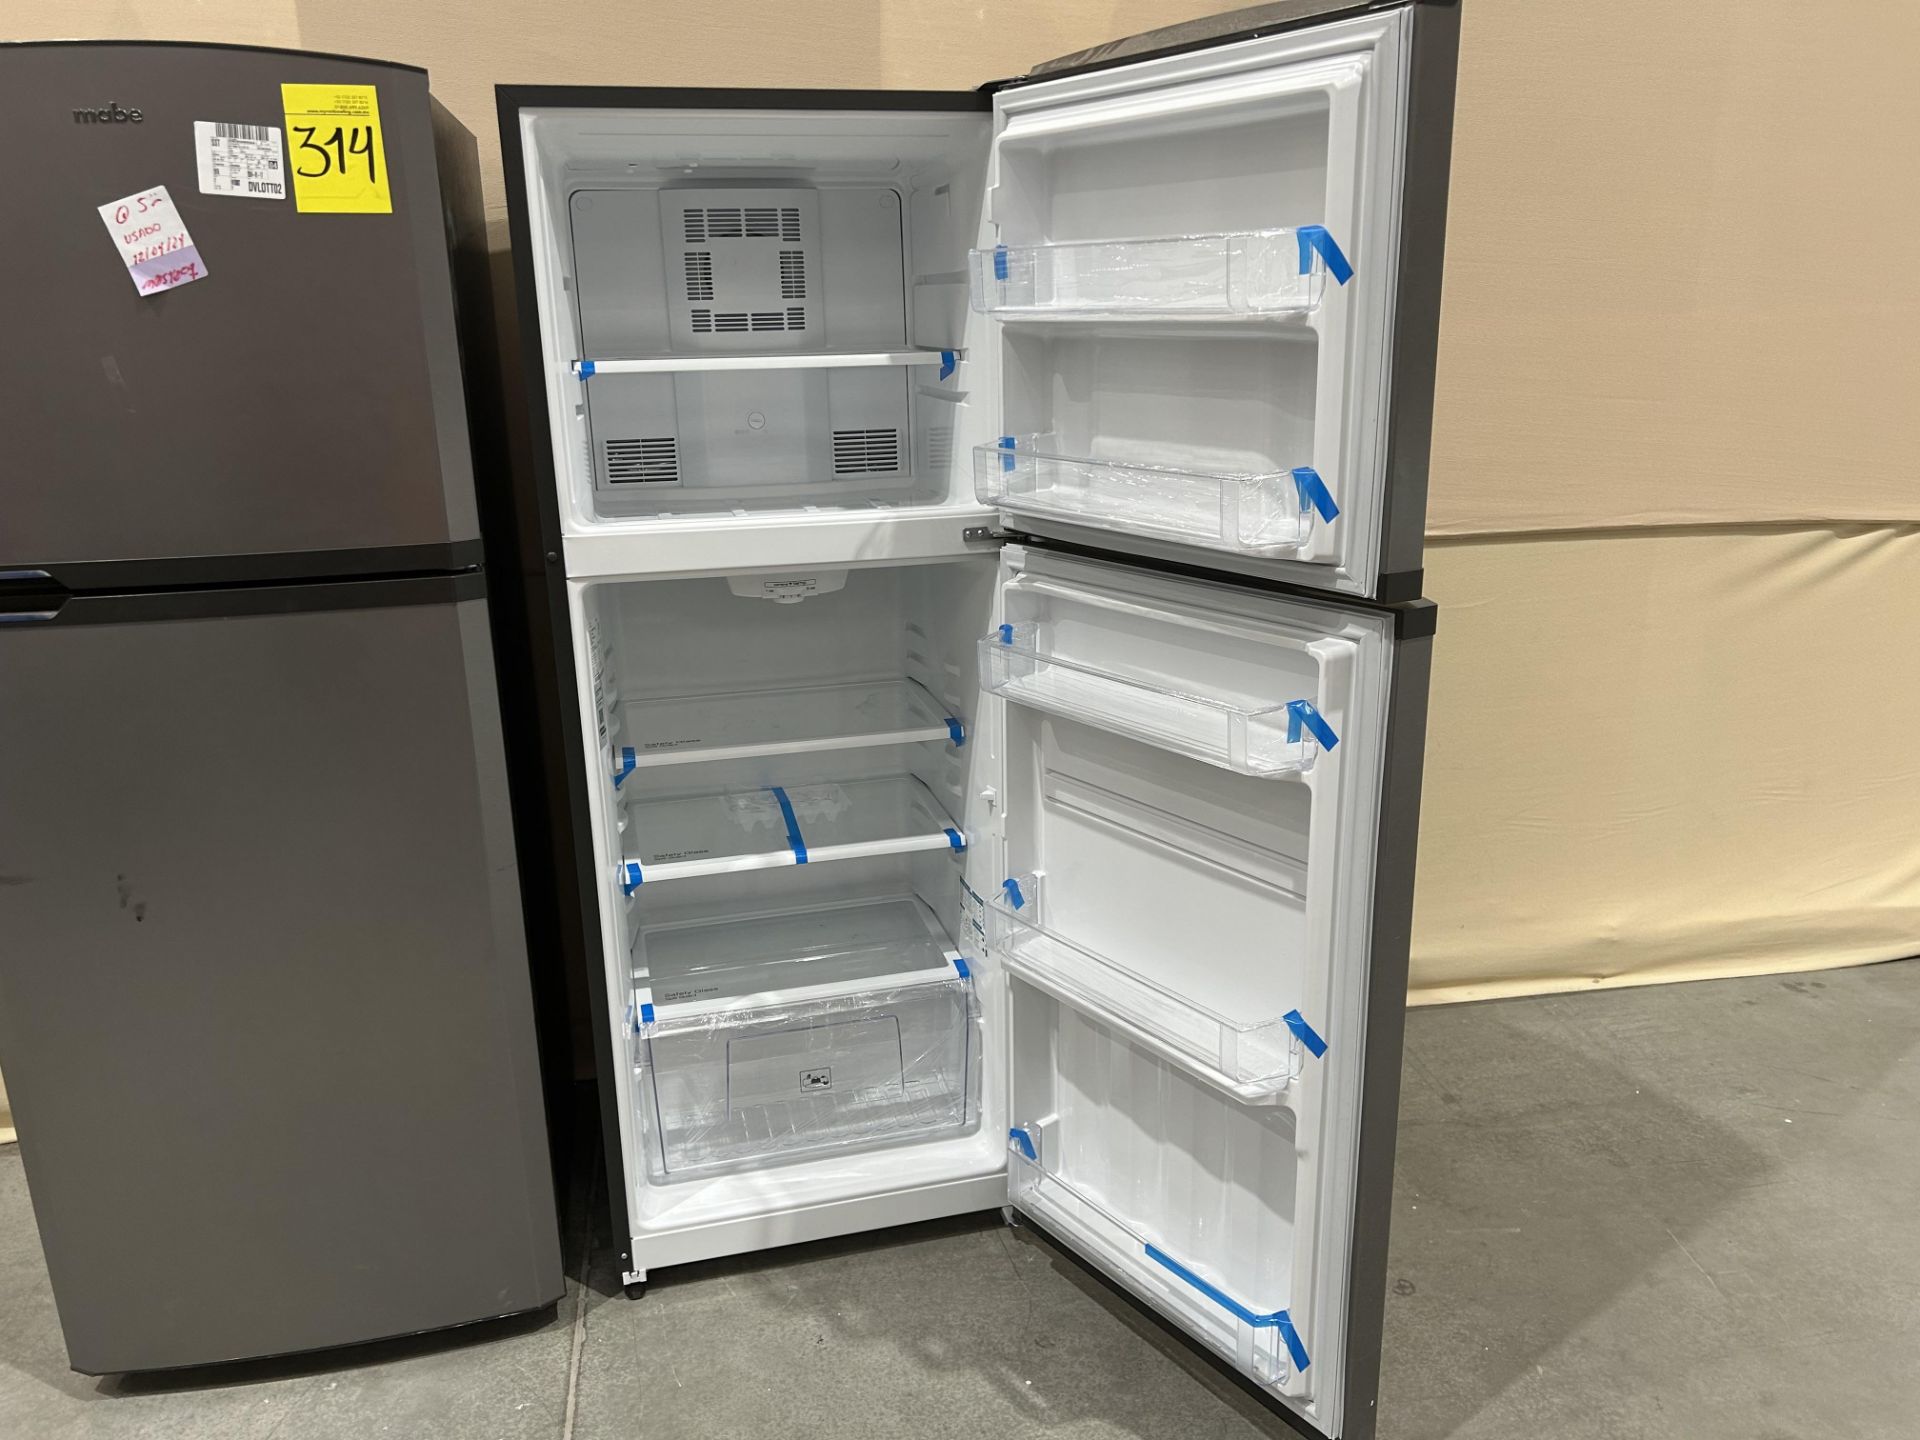 Lote de 2 refrigeradores contiene: 1 Refrigerador Marca MABE, Modelo RME360PVMRMA, Serie 822367, Co - Image 5 of 10